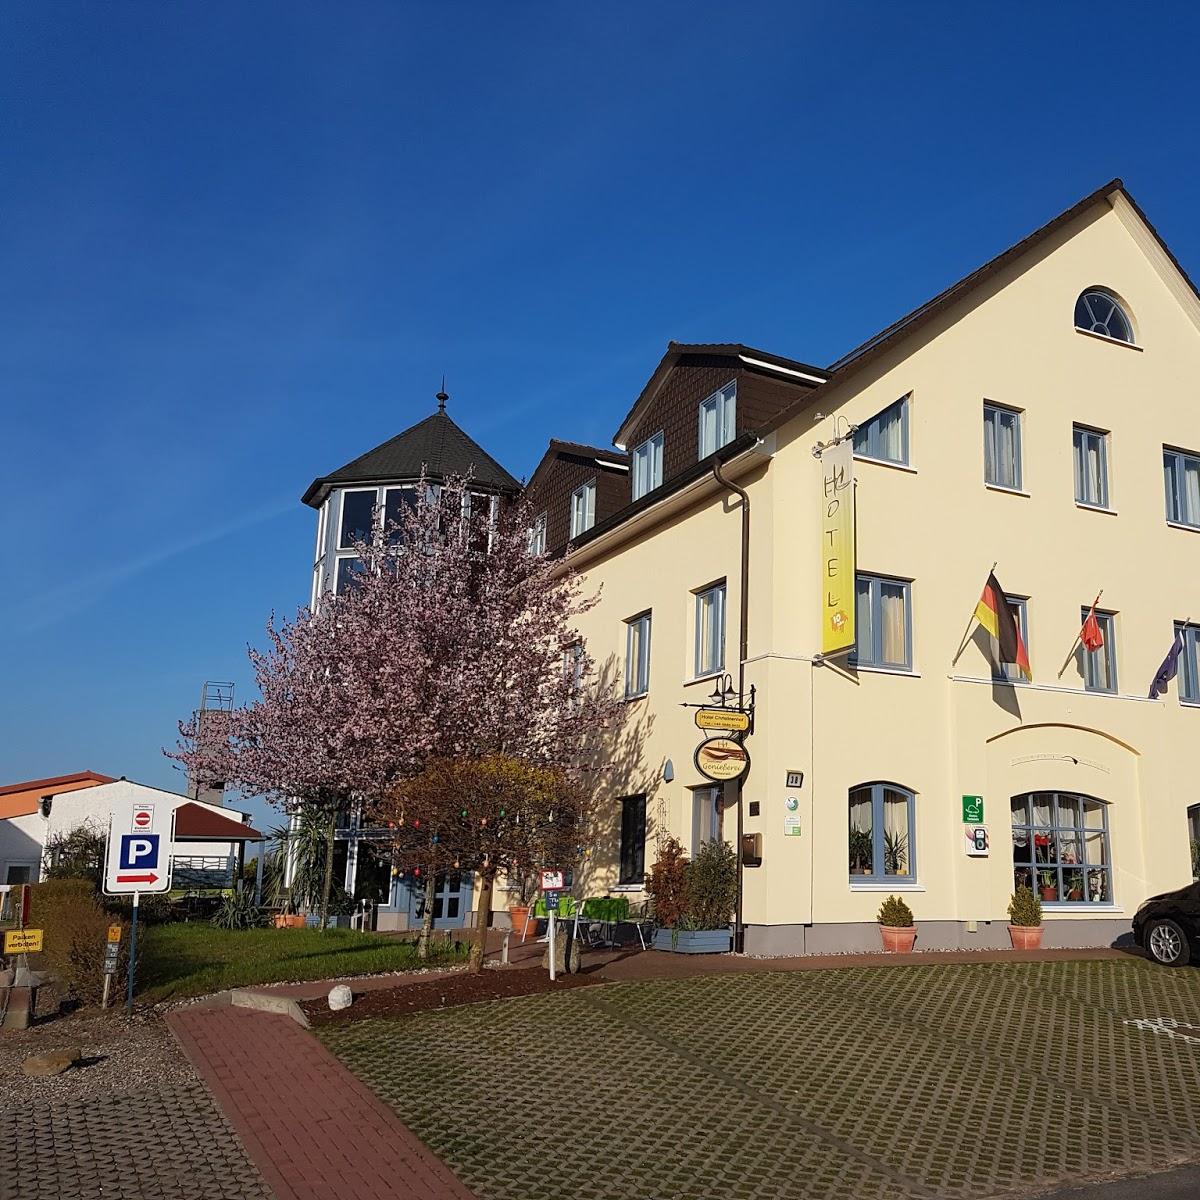 Restaurant "Hotel Christinenhof garni" in Gadebusch